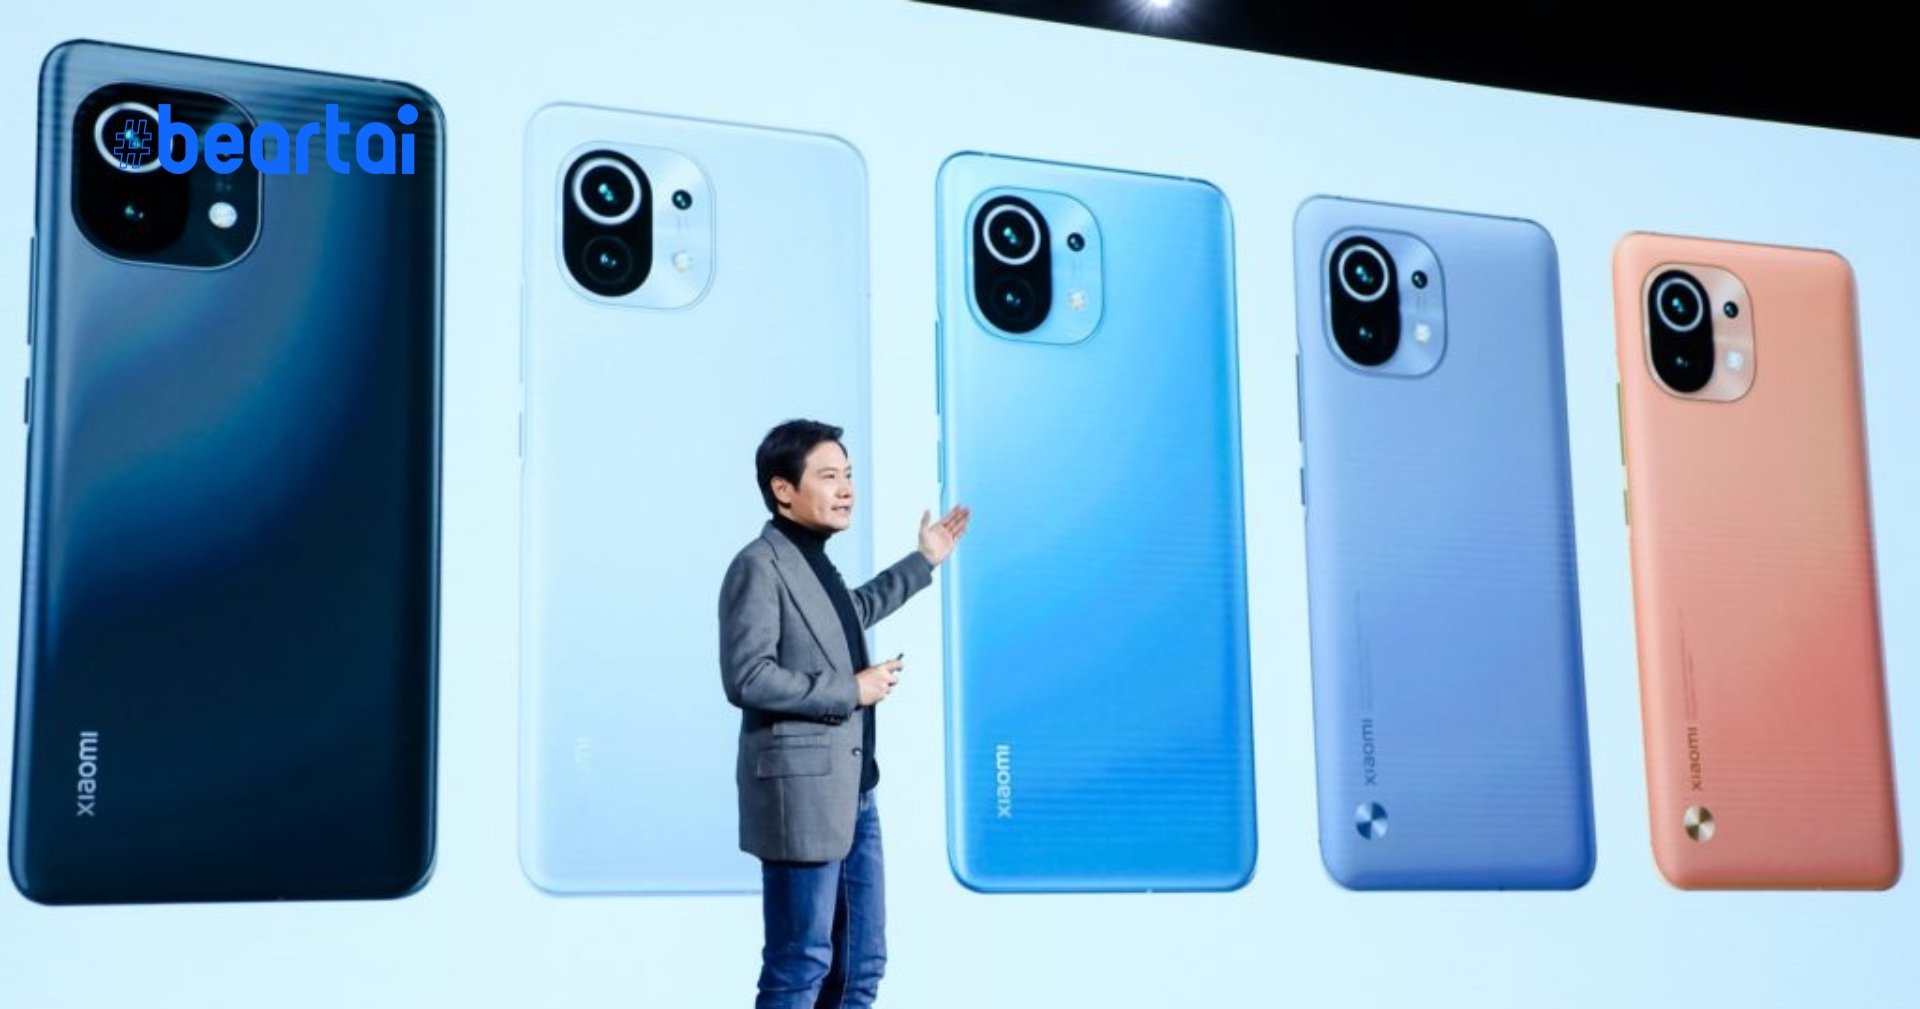 งานทุ่มหินถามทางก็มา Xiaomi ถาม “คุณจะซื้อหรือไม่หากเราทำสมาร์ตโฟนราคา 46,500 บาท”